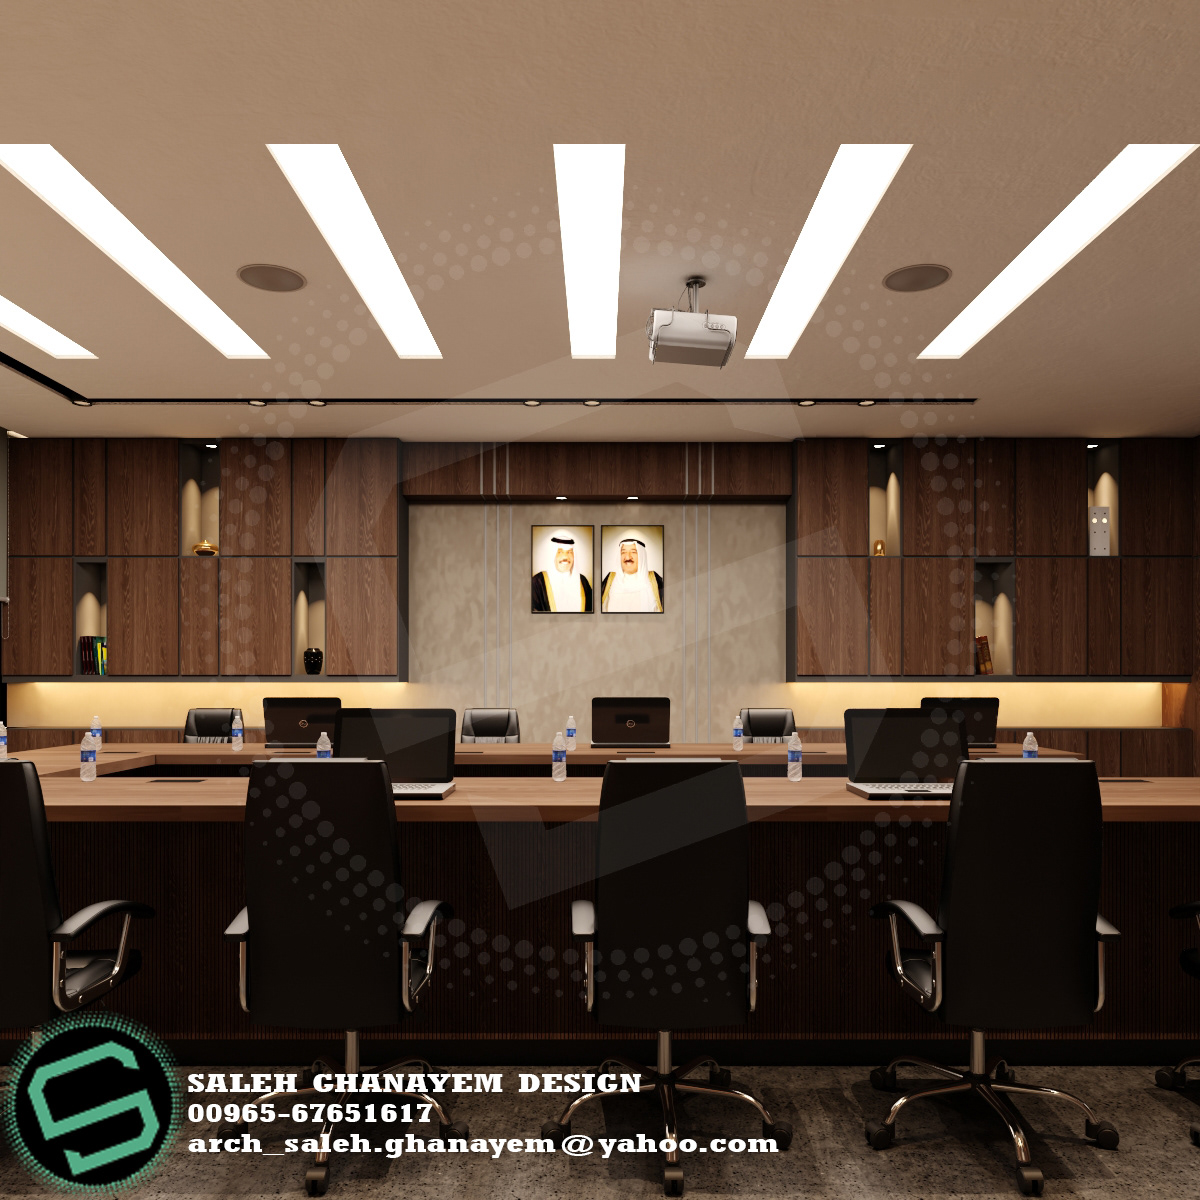 3d's max architecture decoration design interior design  Kuwait تصميم تصميم داخلي  تصميم معماري كويت